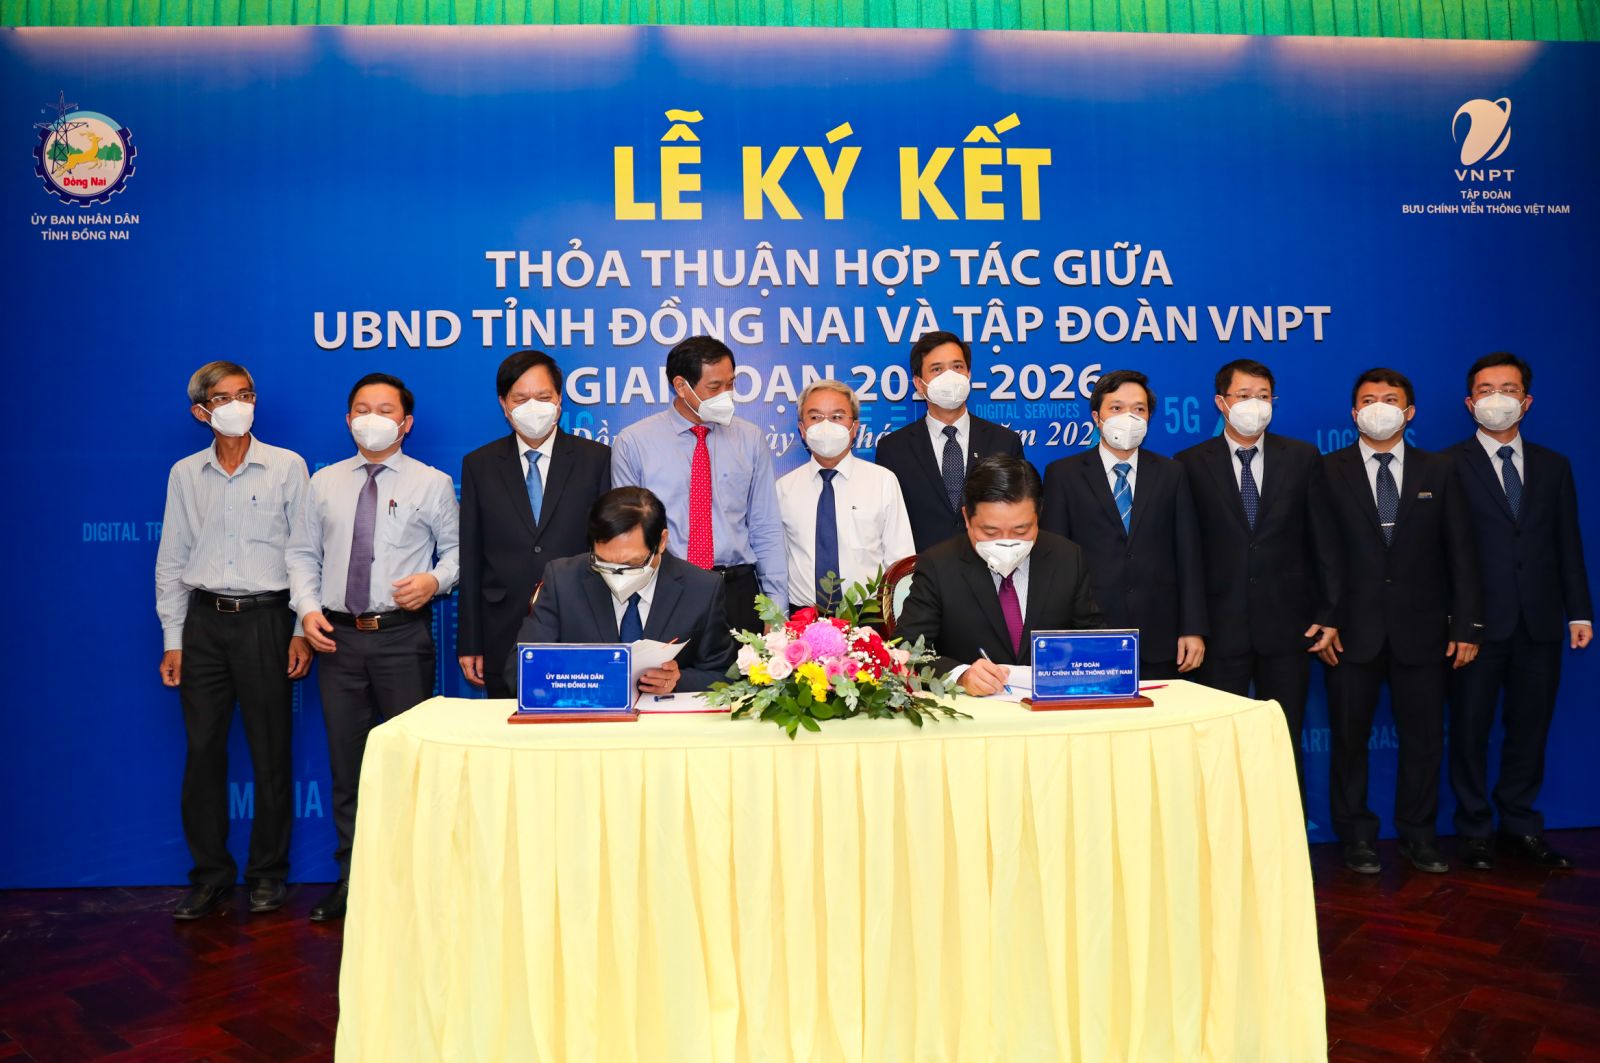 UBND tỉnh Đồng Nai và Tập đoàn VNPT: Hợp tác để thúc đẩy hoàn thành các mục tiêu chuyển đổi số của Đồng Nai